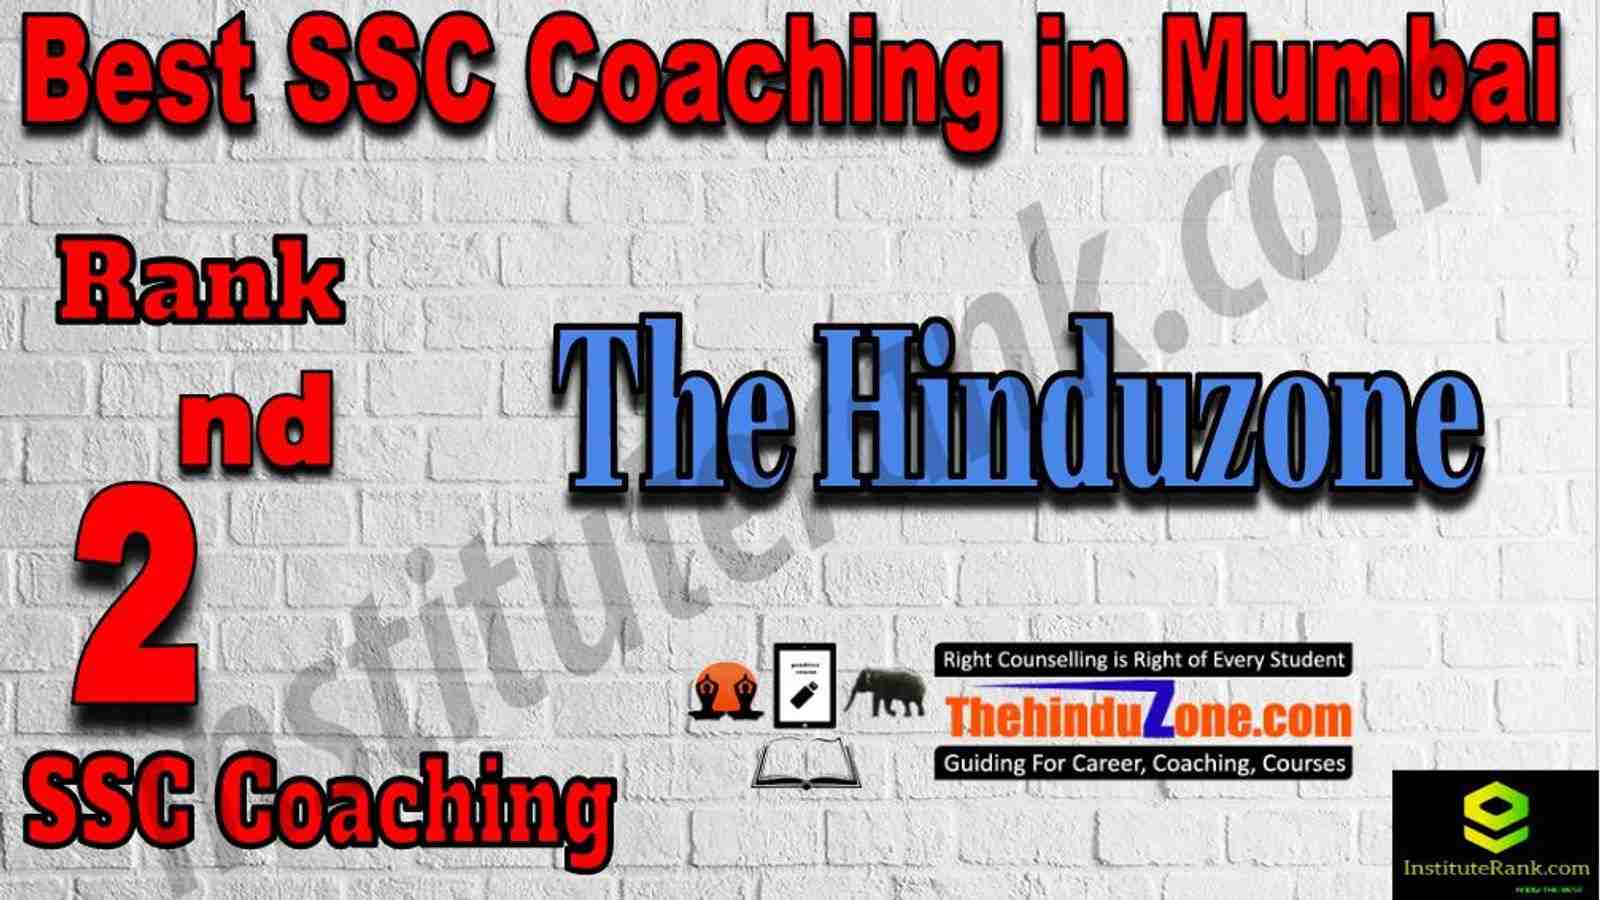 2nd Best SSC Coaching in Mumbai